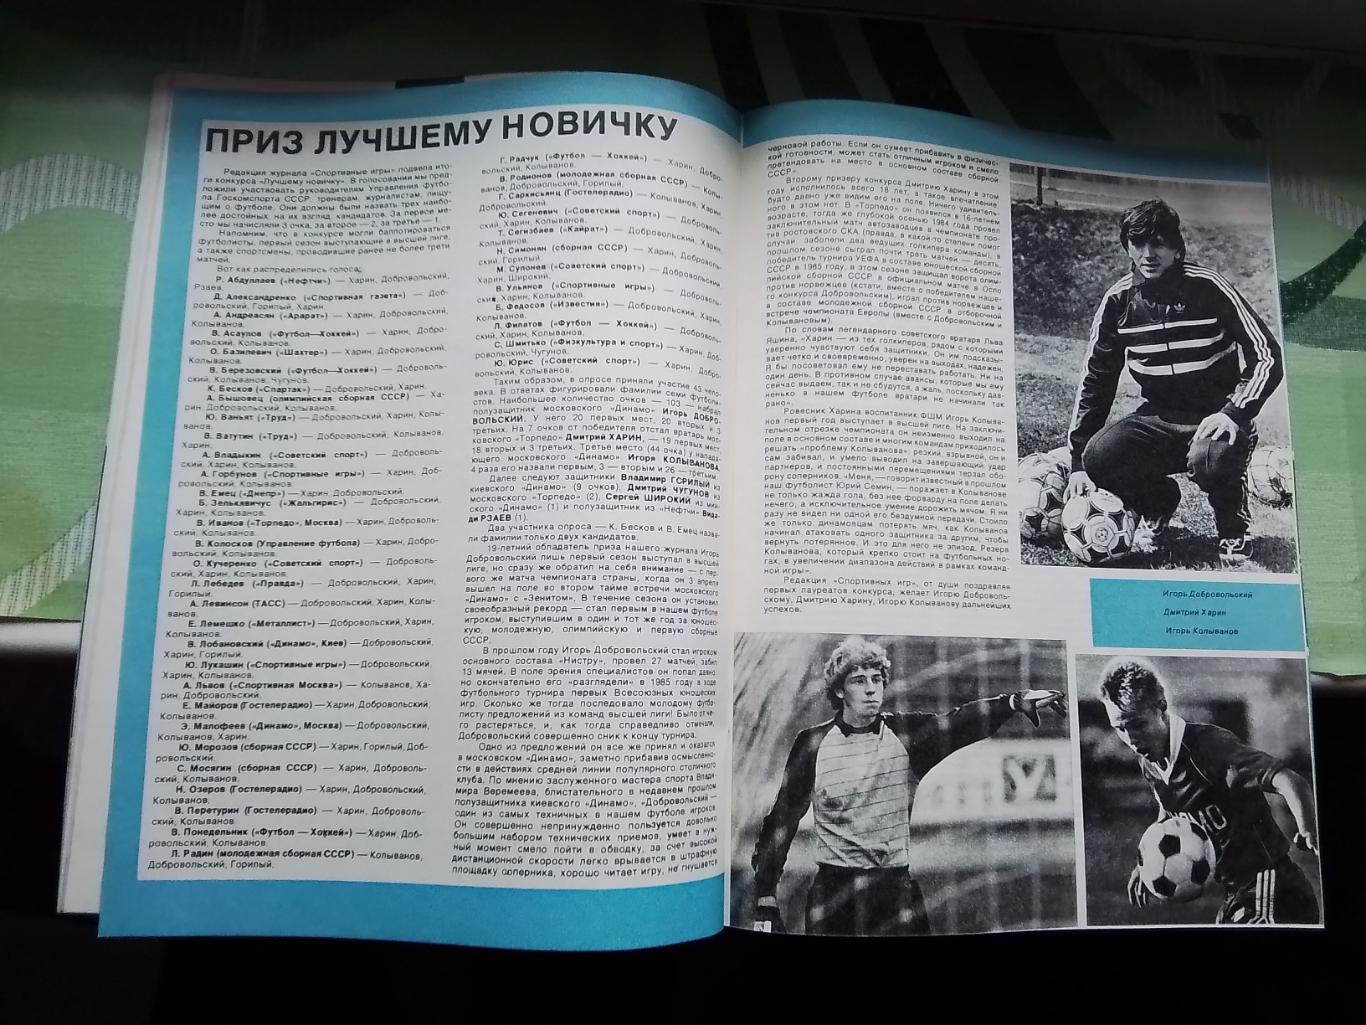 Журнал Спортивные игры 1987 1 Влад Высоцкий Франция на ЧМ-86 ВВА чемпион регби 4